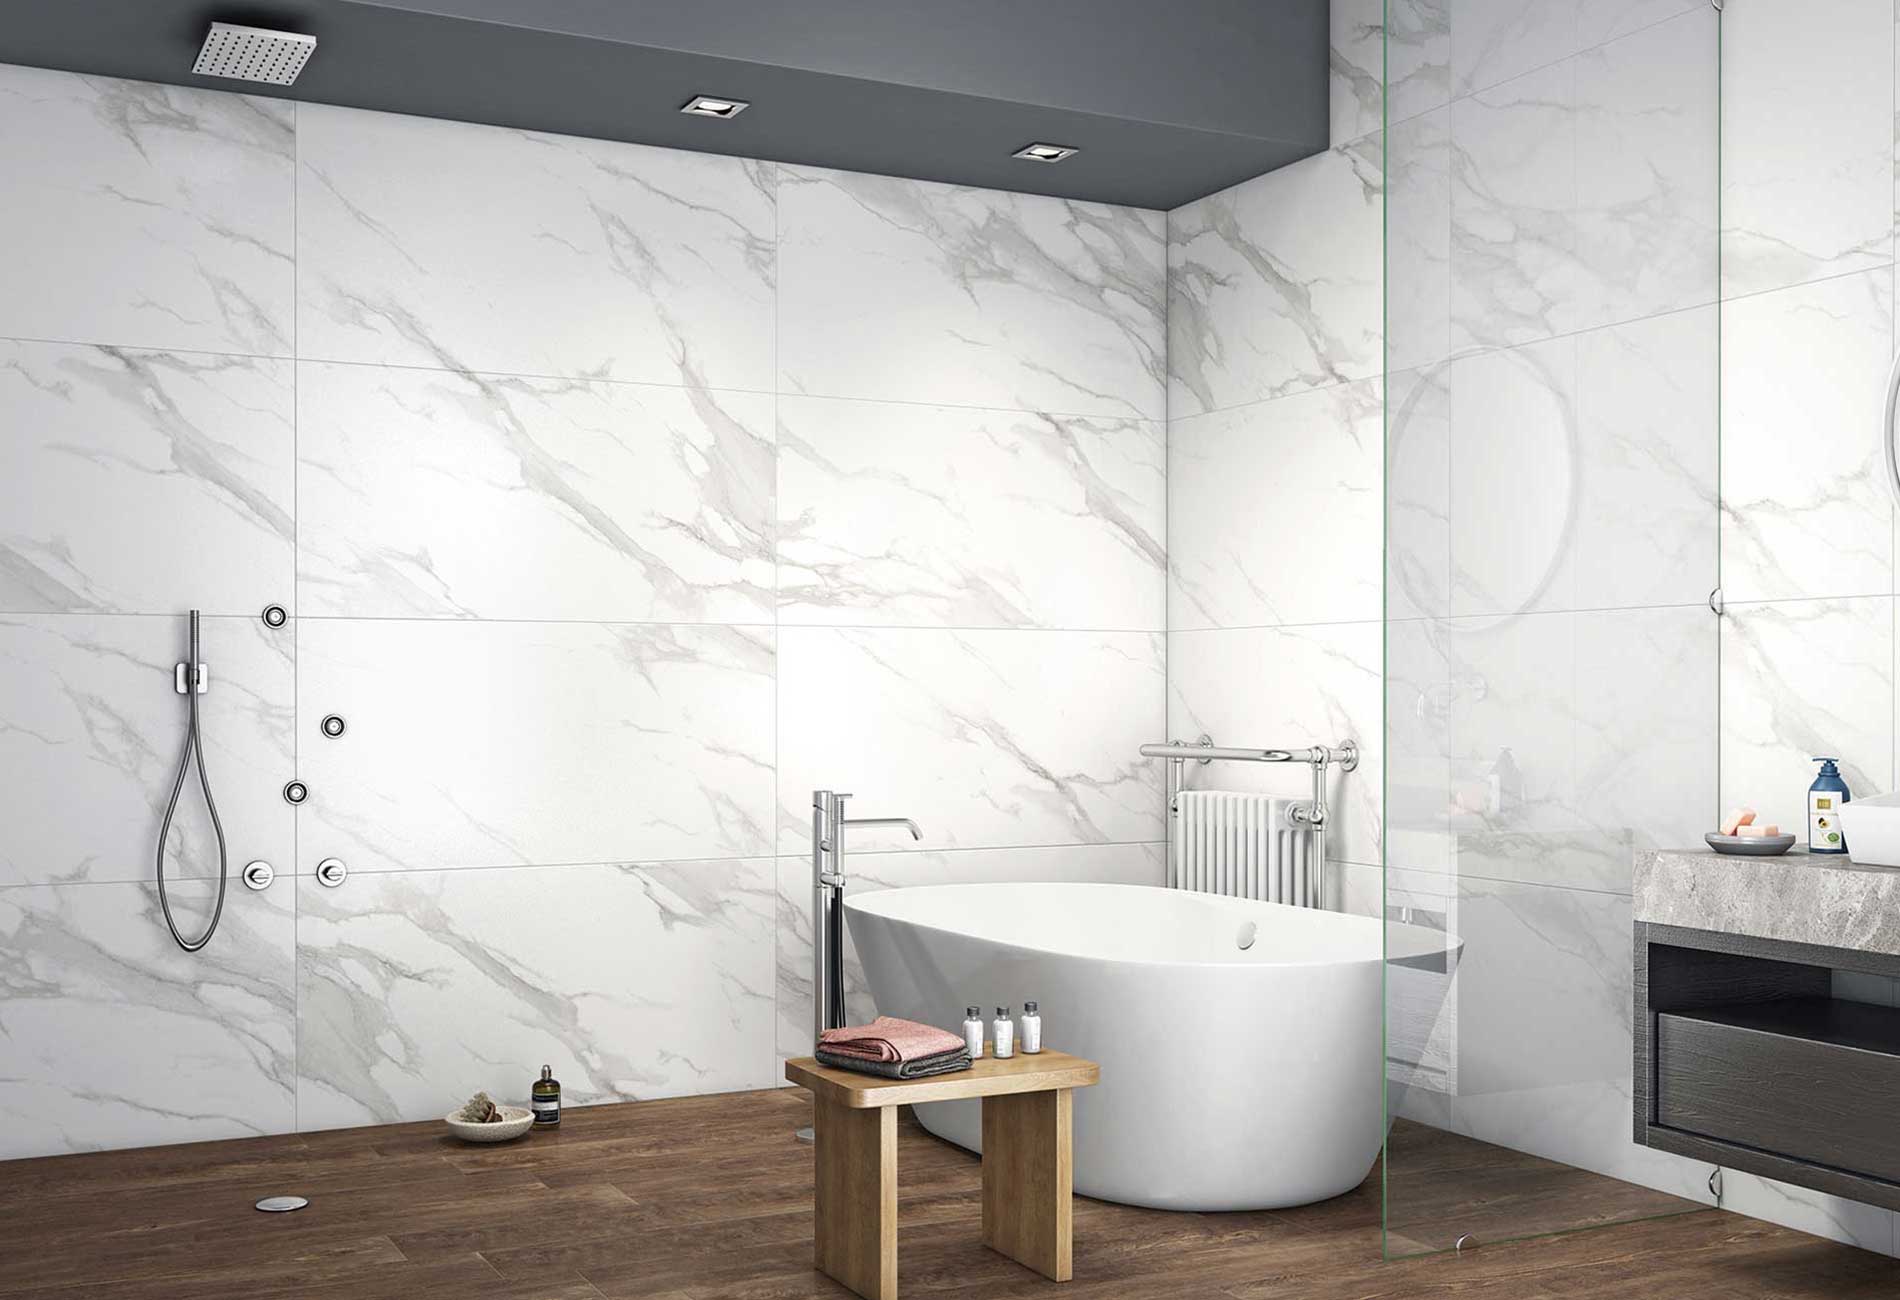 Pallet Deal: 68 Tiles (48 sq.m) Statuario Mercury Grey Marble Effect Polished 60x120cm Porcelain Wall & Floor Tile